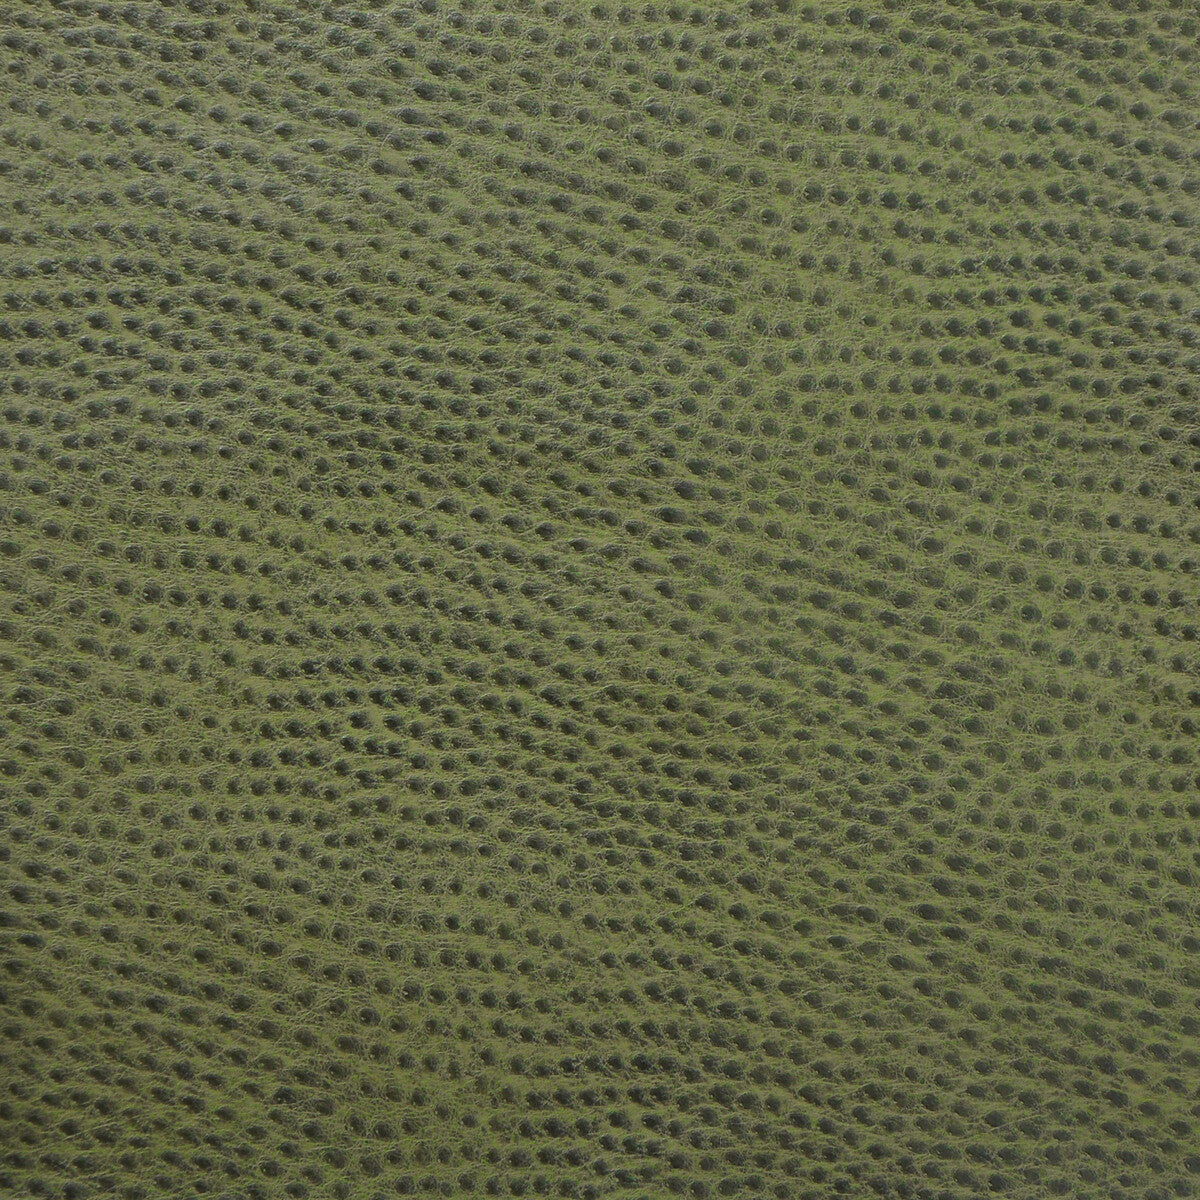 Kravet Design fabric in delaney-3 color - pattern DELANEY.3.0 - by Kravet Design